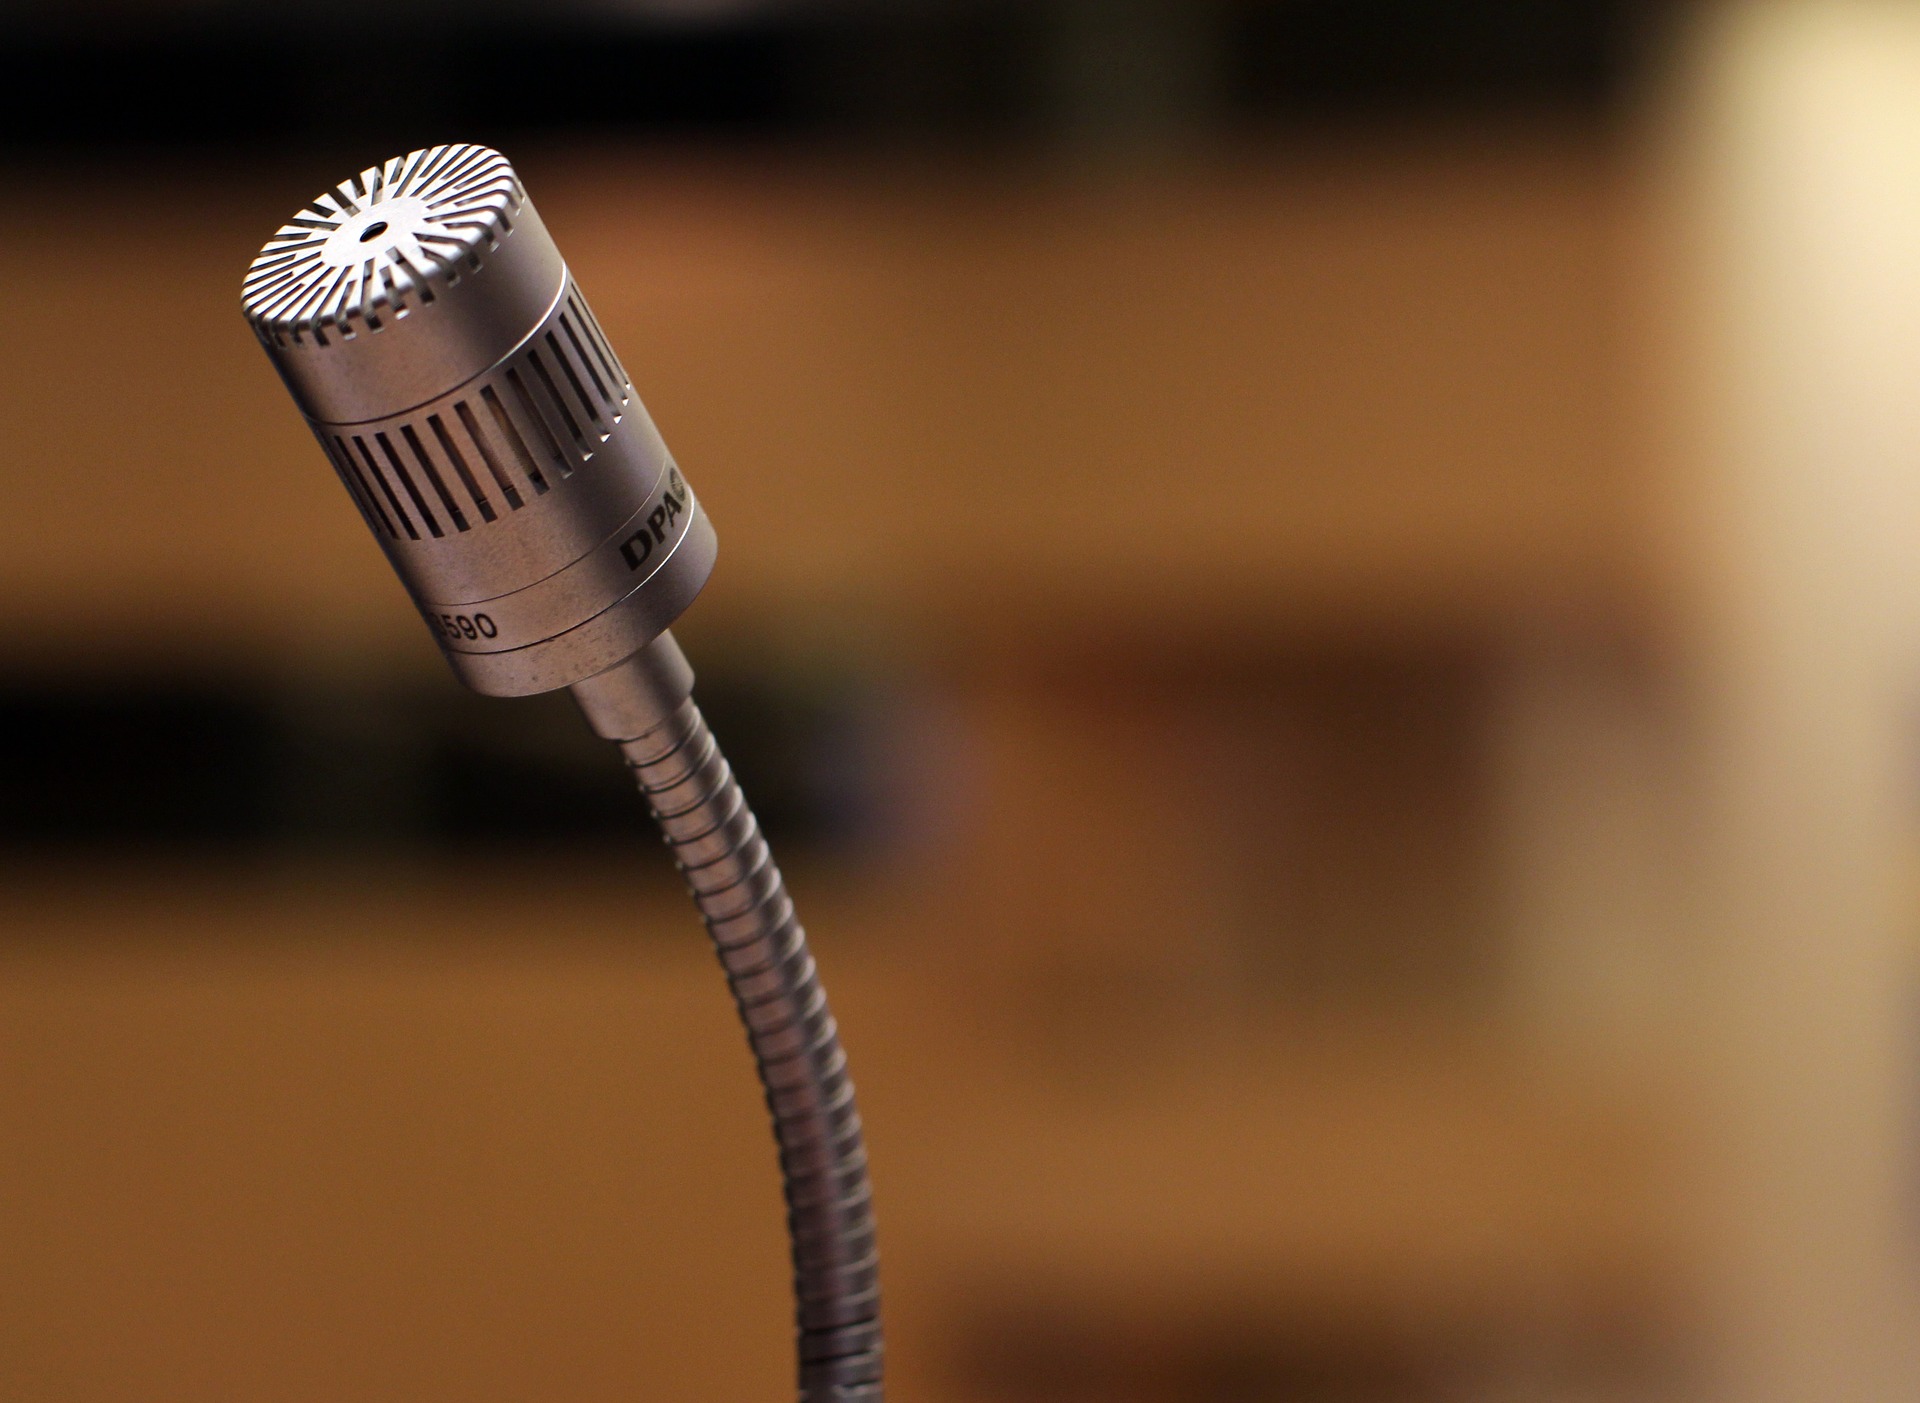 microphone (c) www.pixabay.com